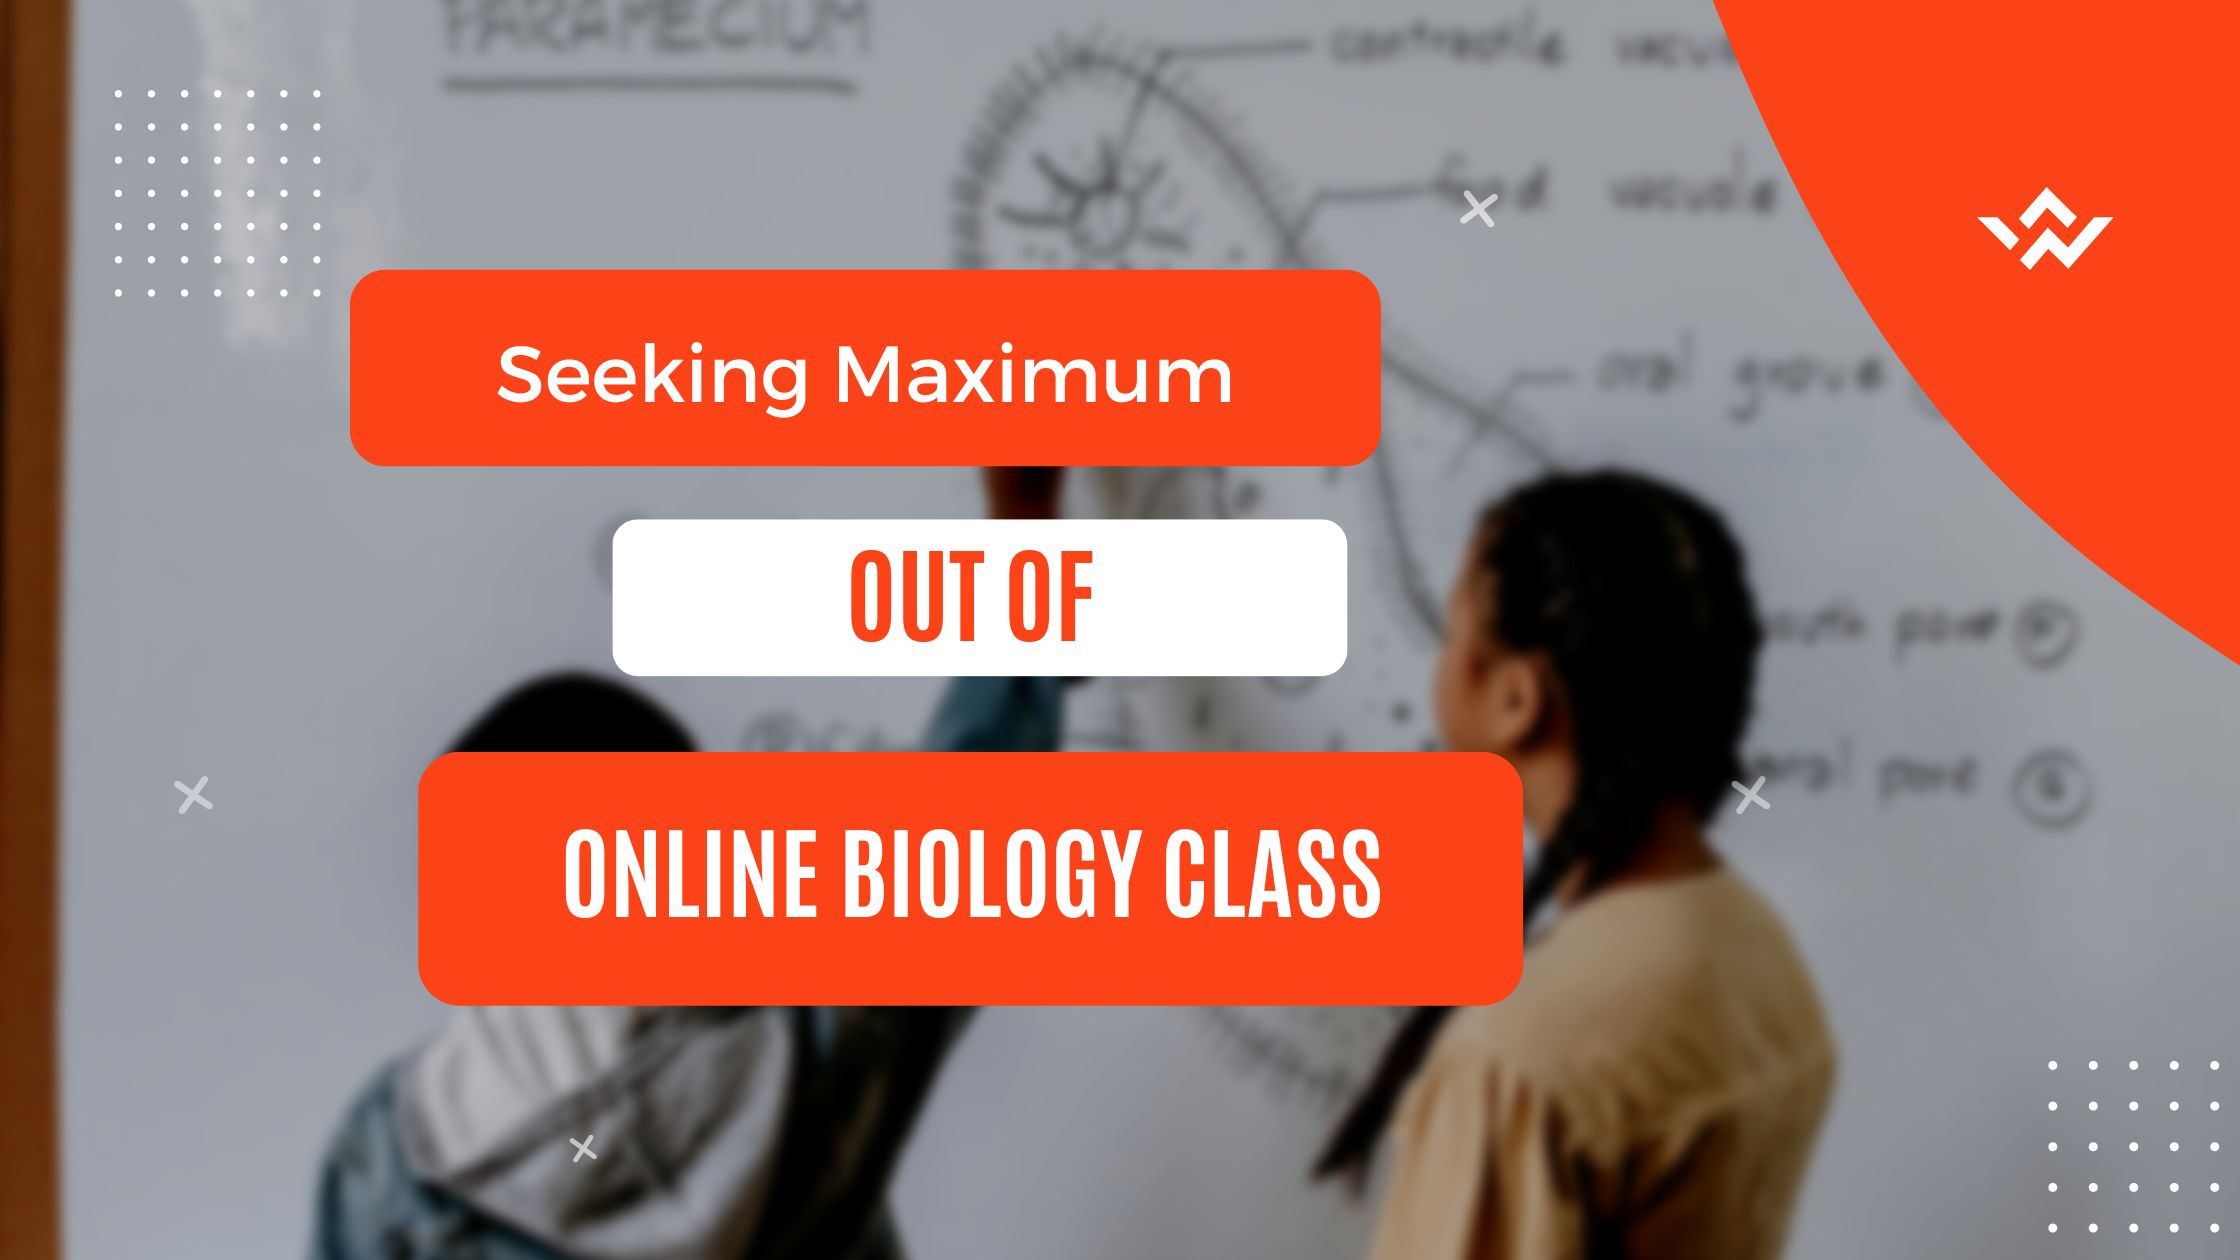 Seeking Maximum Out of Online Biology Class